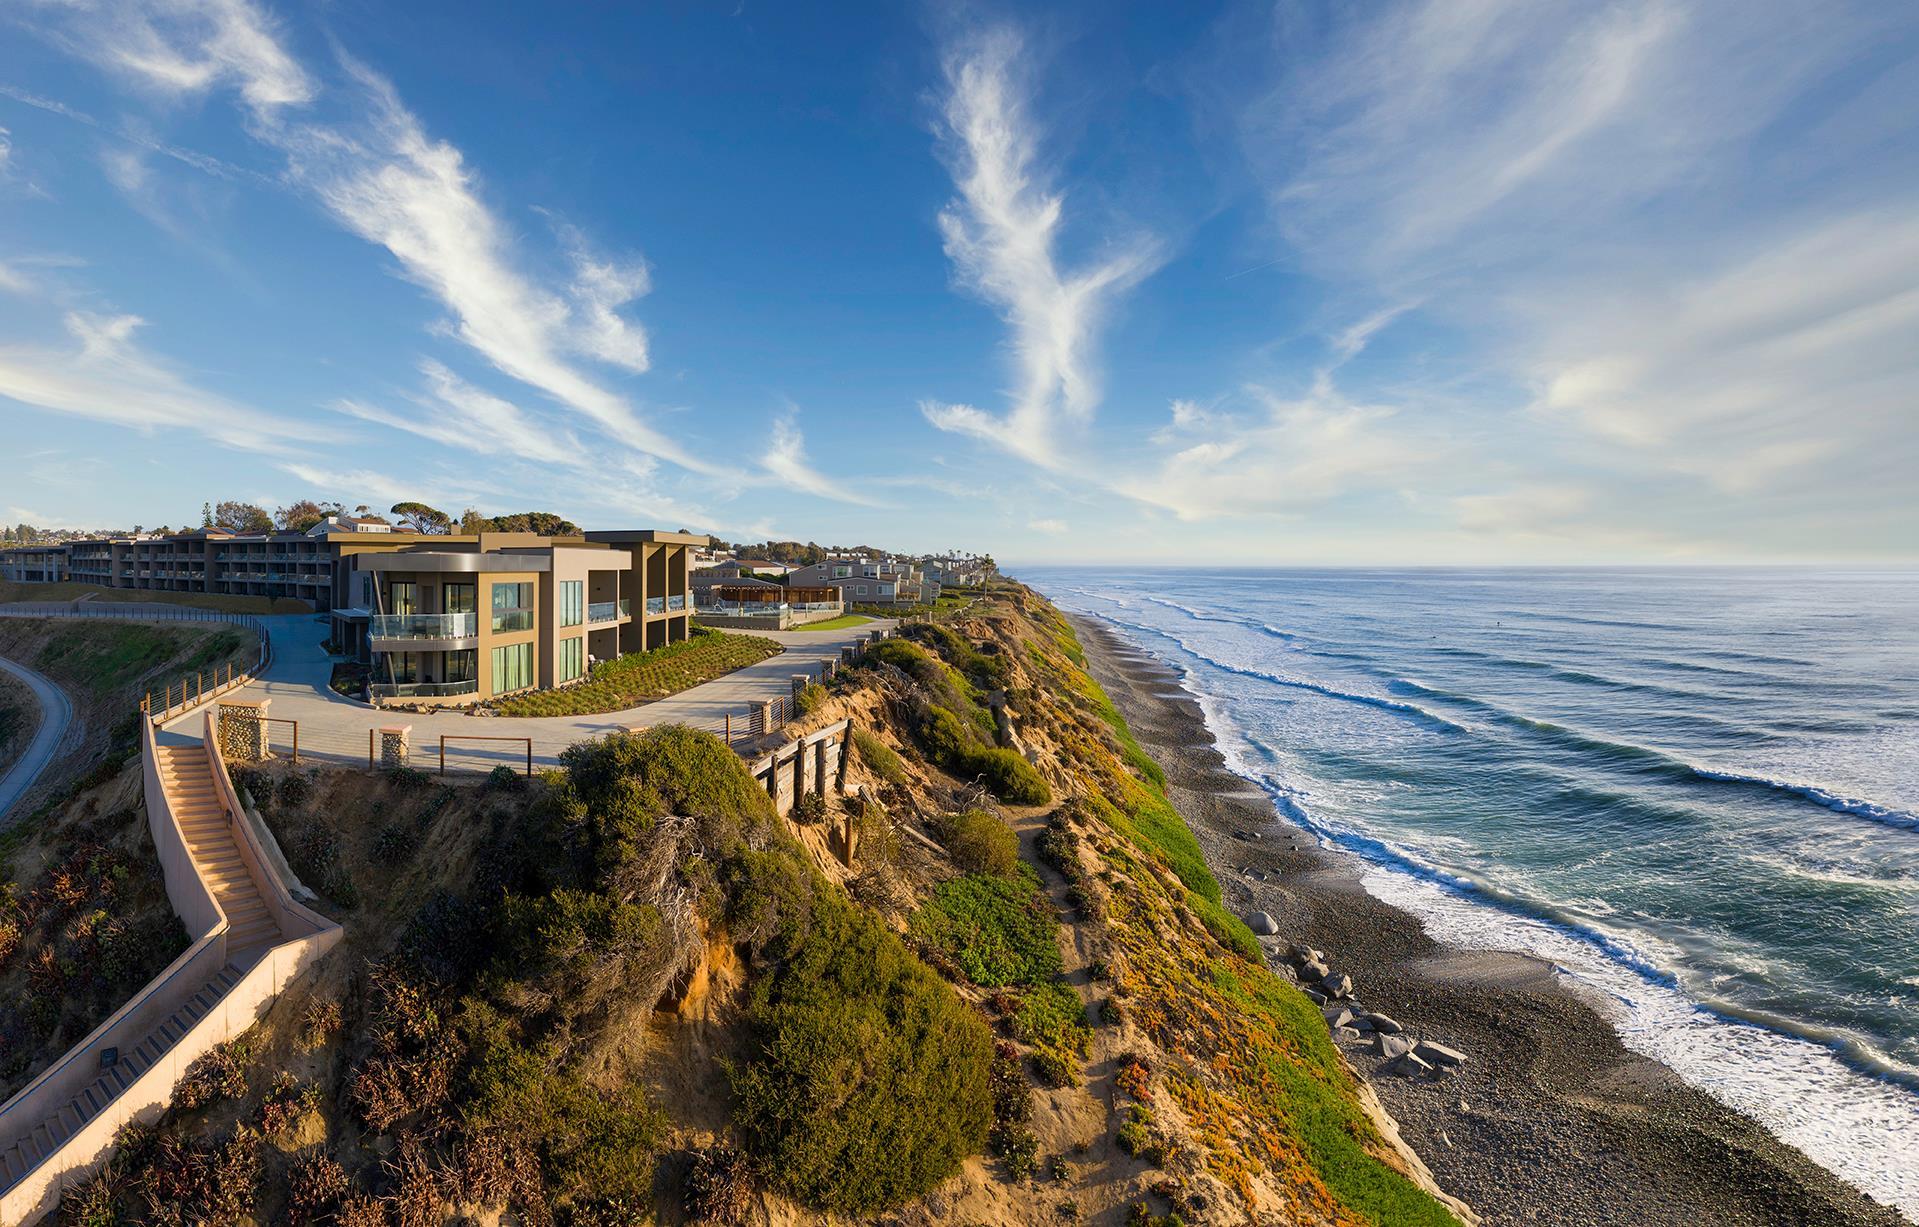 Alila Marea Beach Resort Encinitas, a Hyatt Luxury Resort in Encinitas, CA